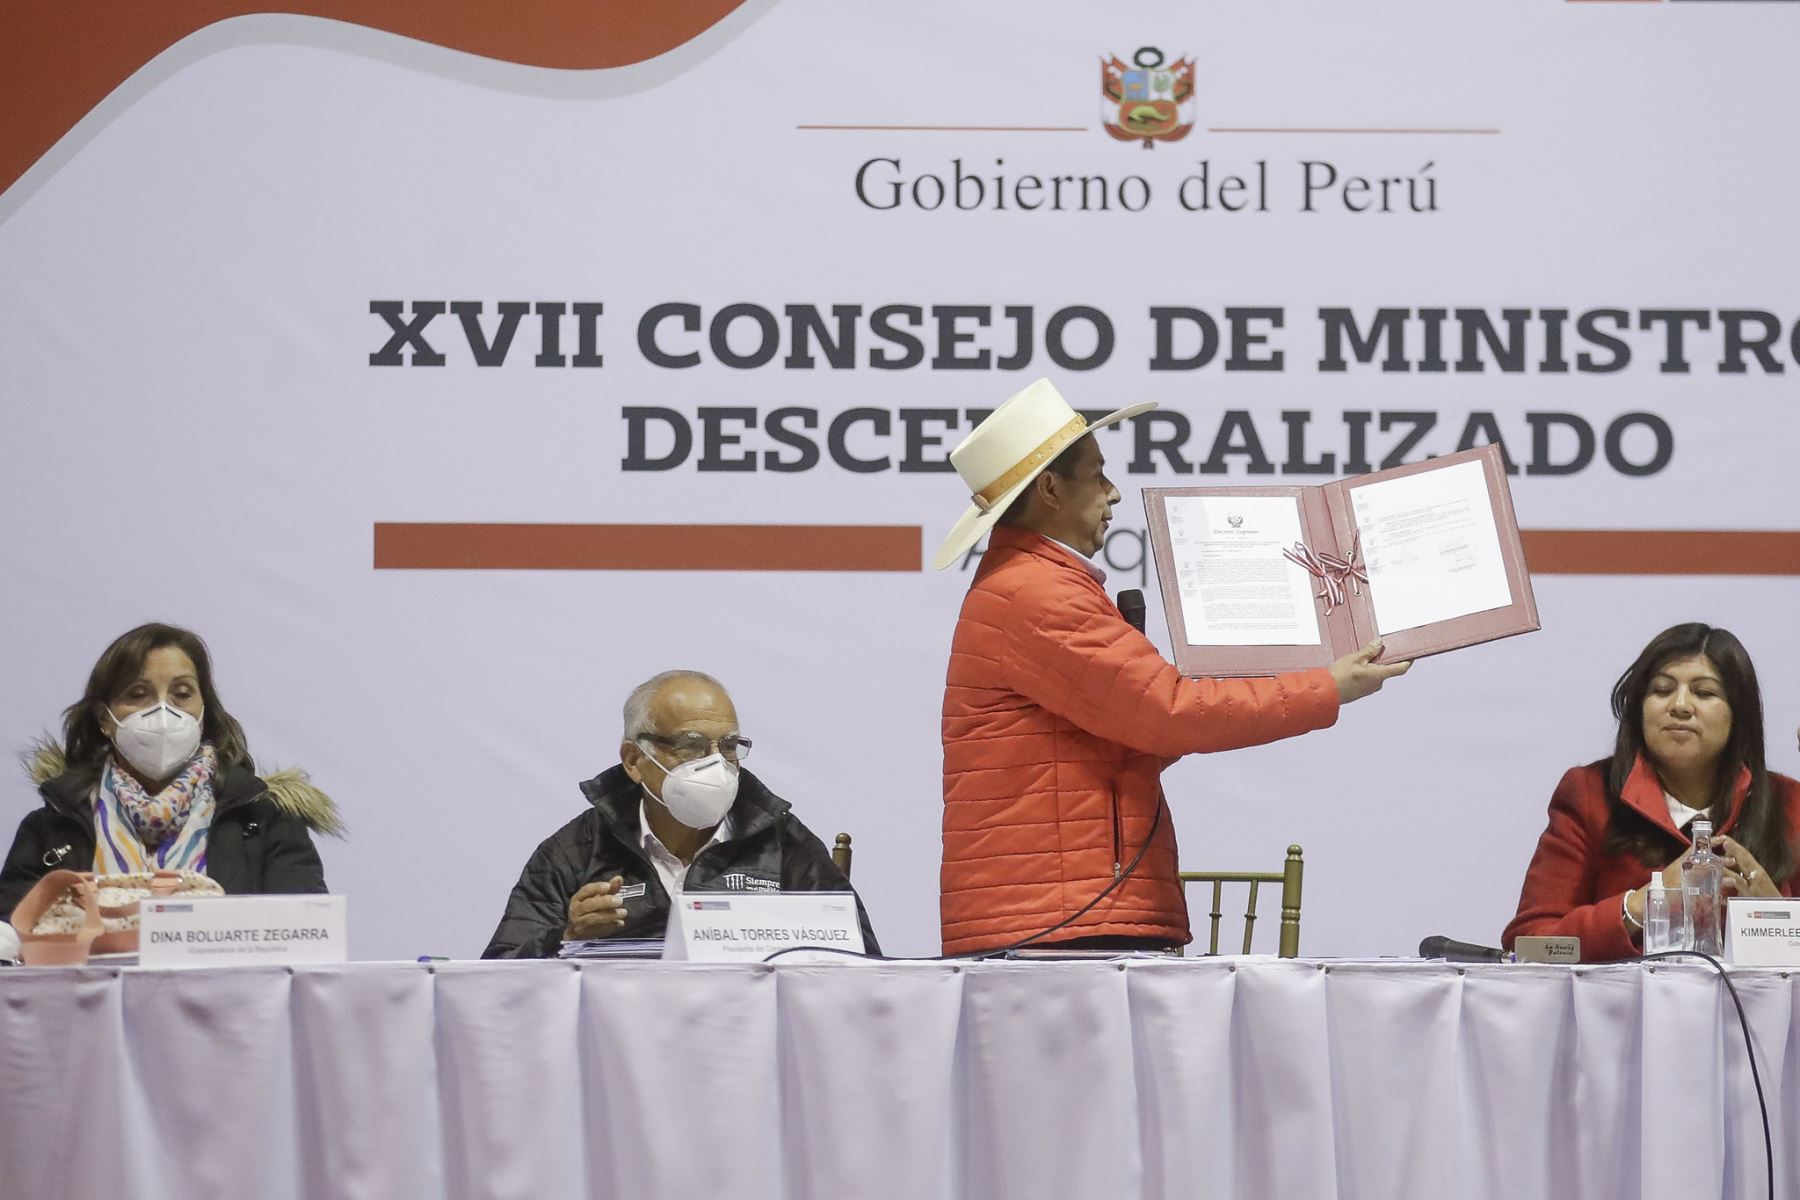 Presidente Pedro Castillo, participa en el XVII Consejo de Ministros Descentralizado en Arequipa.
Foto: ANDINA/Prensa Presidencia